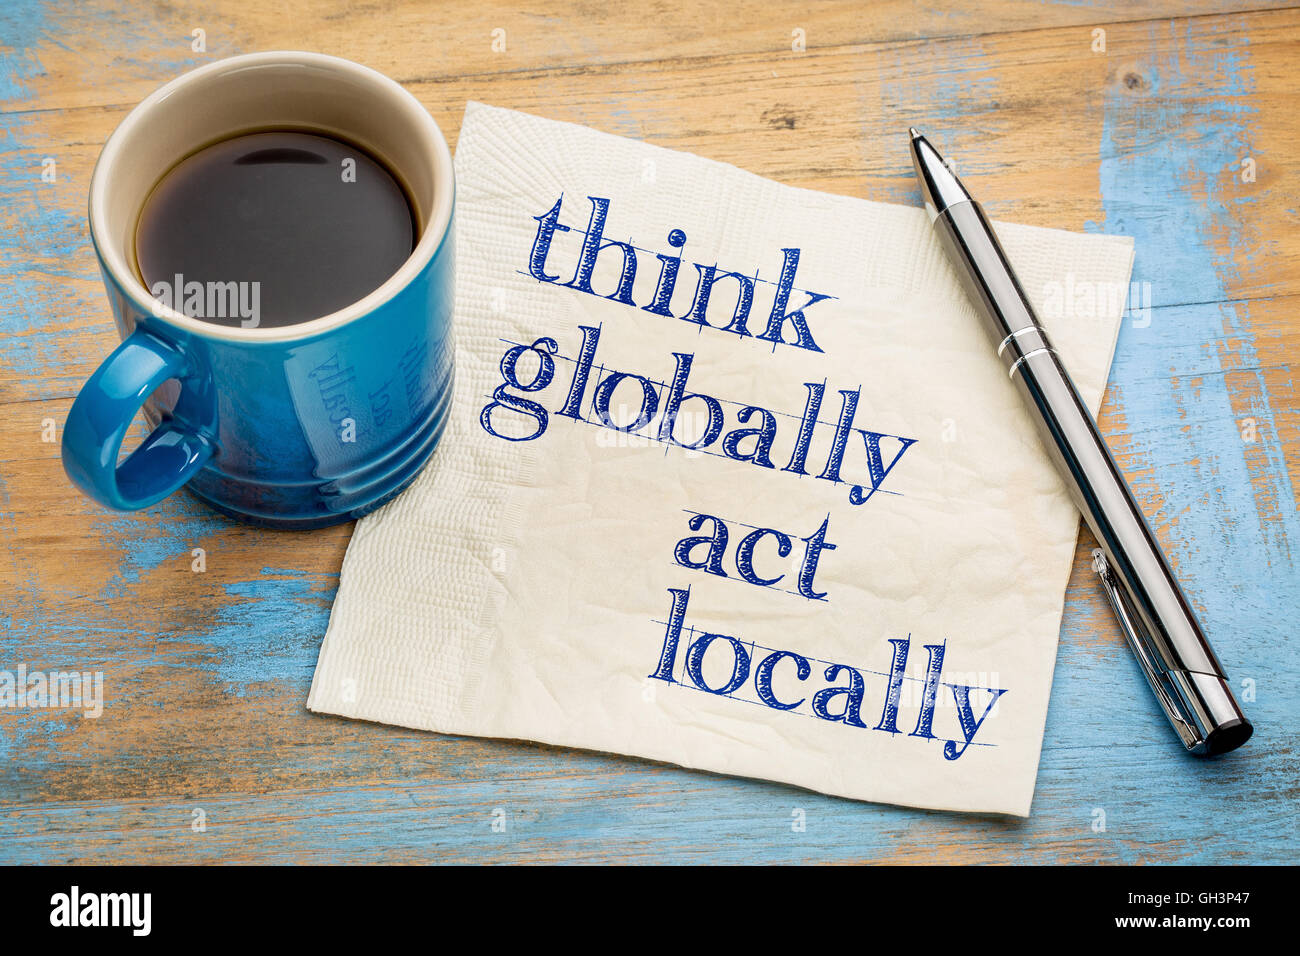 Pensar globalmente, actuar localmente - Recordatorio de la escritura a mano en una servilleta con una taza de café espresso Foto de stock